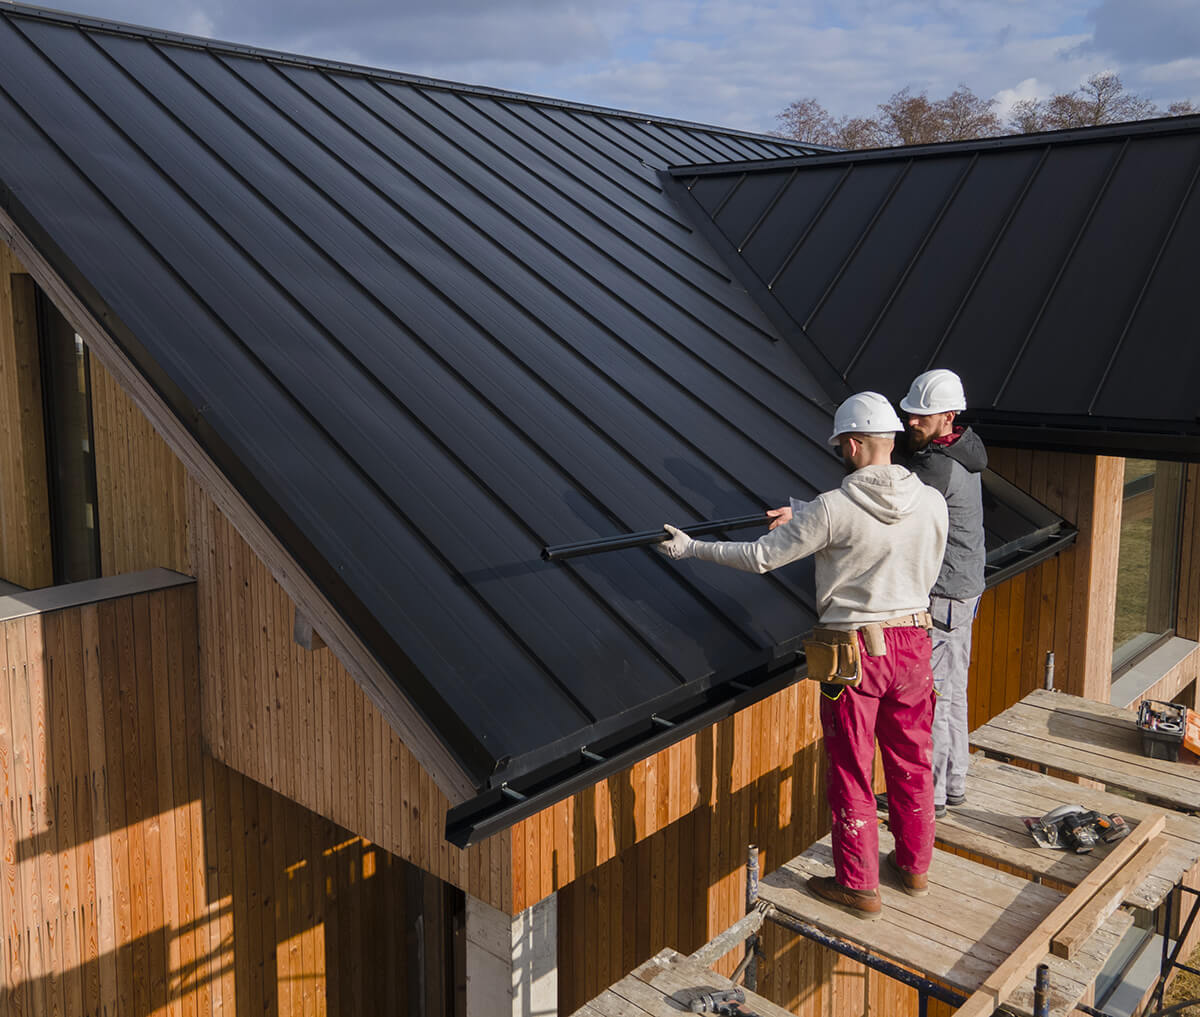 Deux couvreurs portant des casques de protection travaillent sur le toit d'une maison en bois. Ils sont en train d'installer ou de vérifier des panneaux métalliques noirs. L'un d'eux tient une grande barre métallique, tandis que l'autre ajuste les panneaux. Ils se tiennent sur un échafaudage en bois.